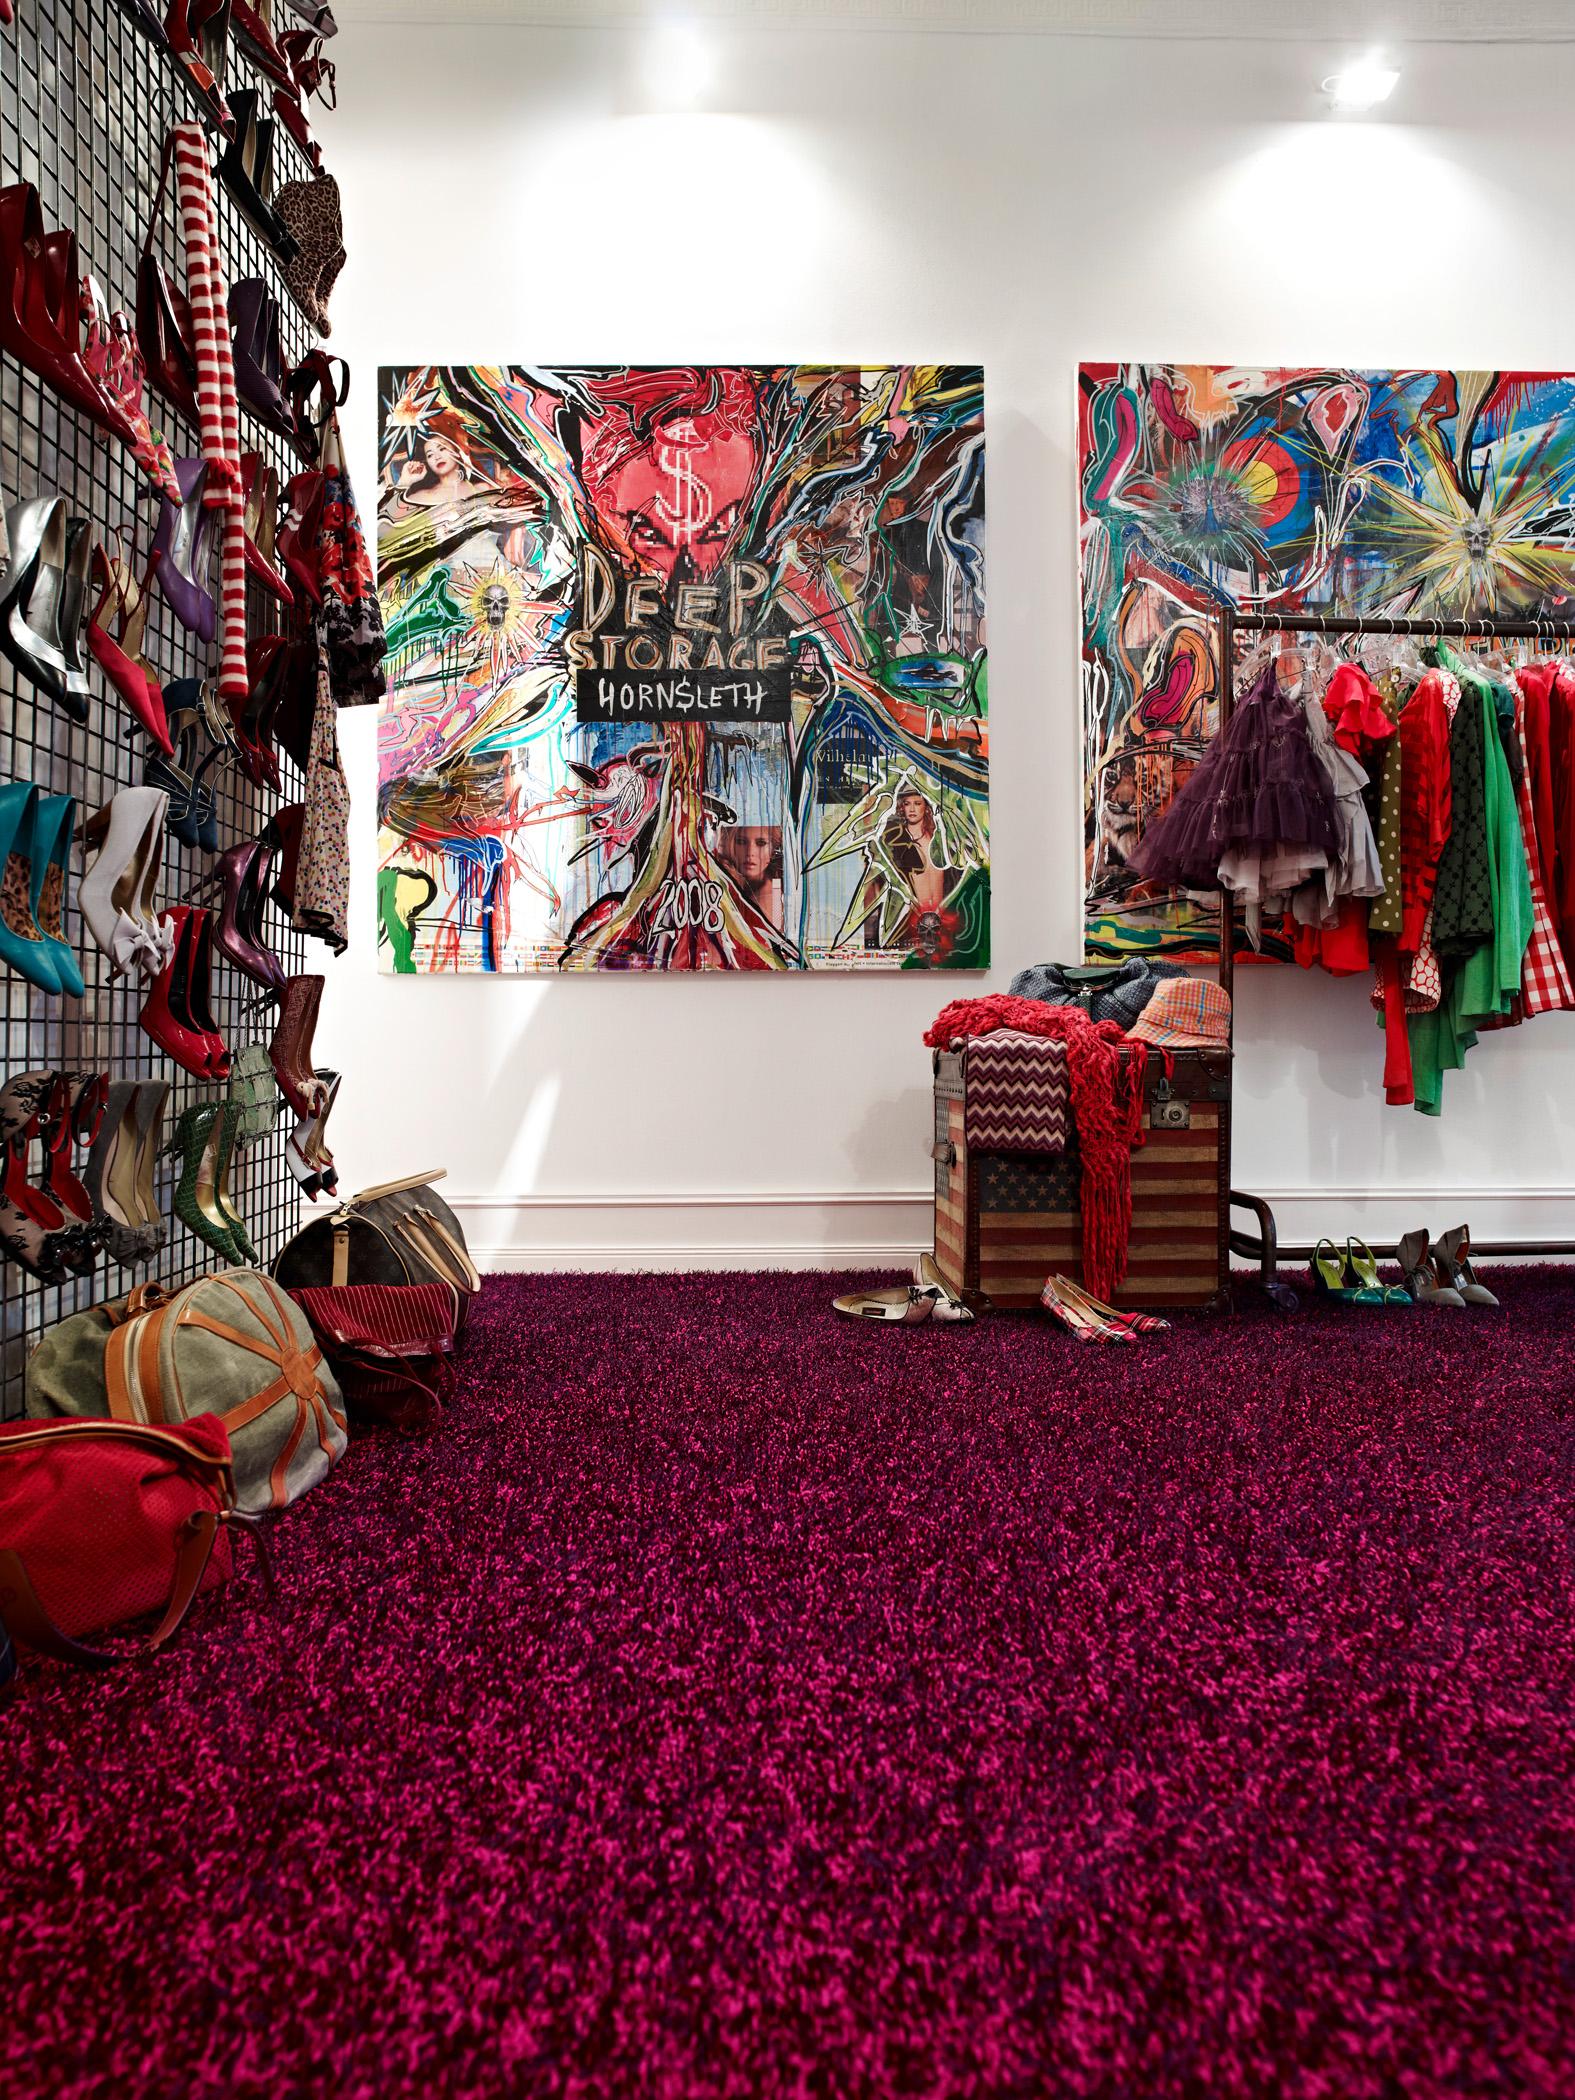 Kreatives Chaos im Ankleidezimmer #teppich #aufbewahrung #wandgestaltung #kleiderstange #pinkfarbenerteppich #ankleidezimmer #wandgestaltungflur #flurbeleuchtung ©Bernd Opitz für Vorwerk